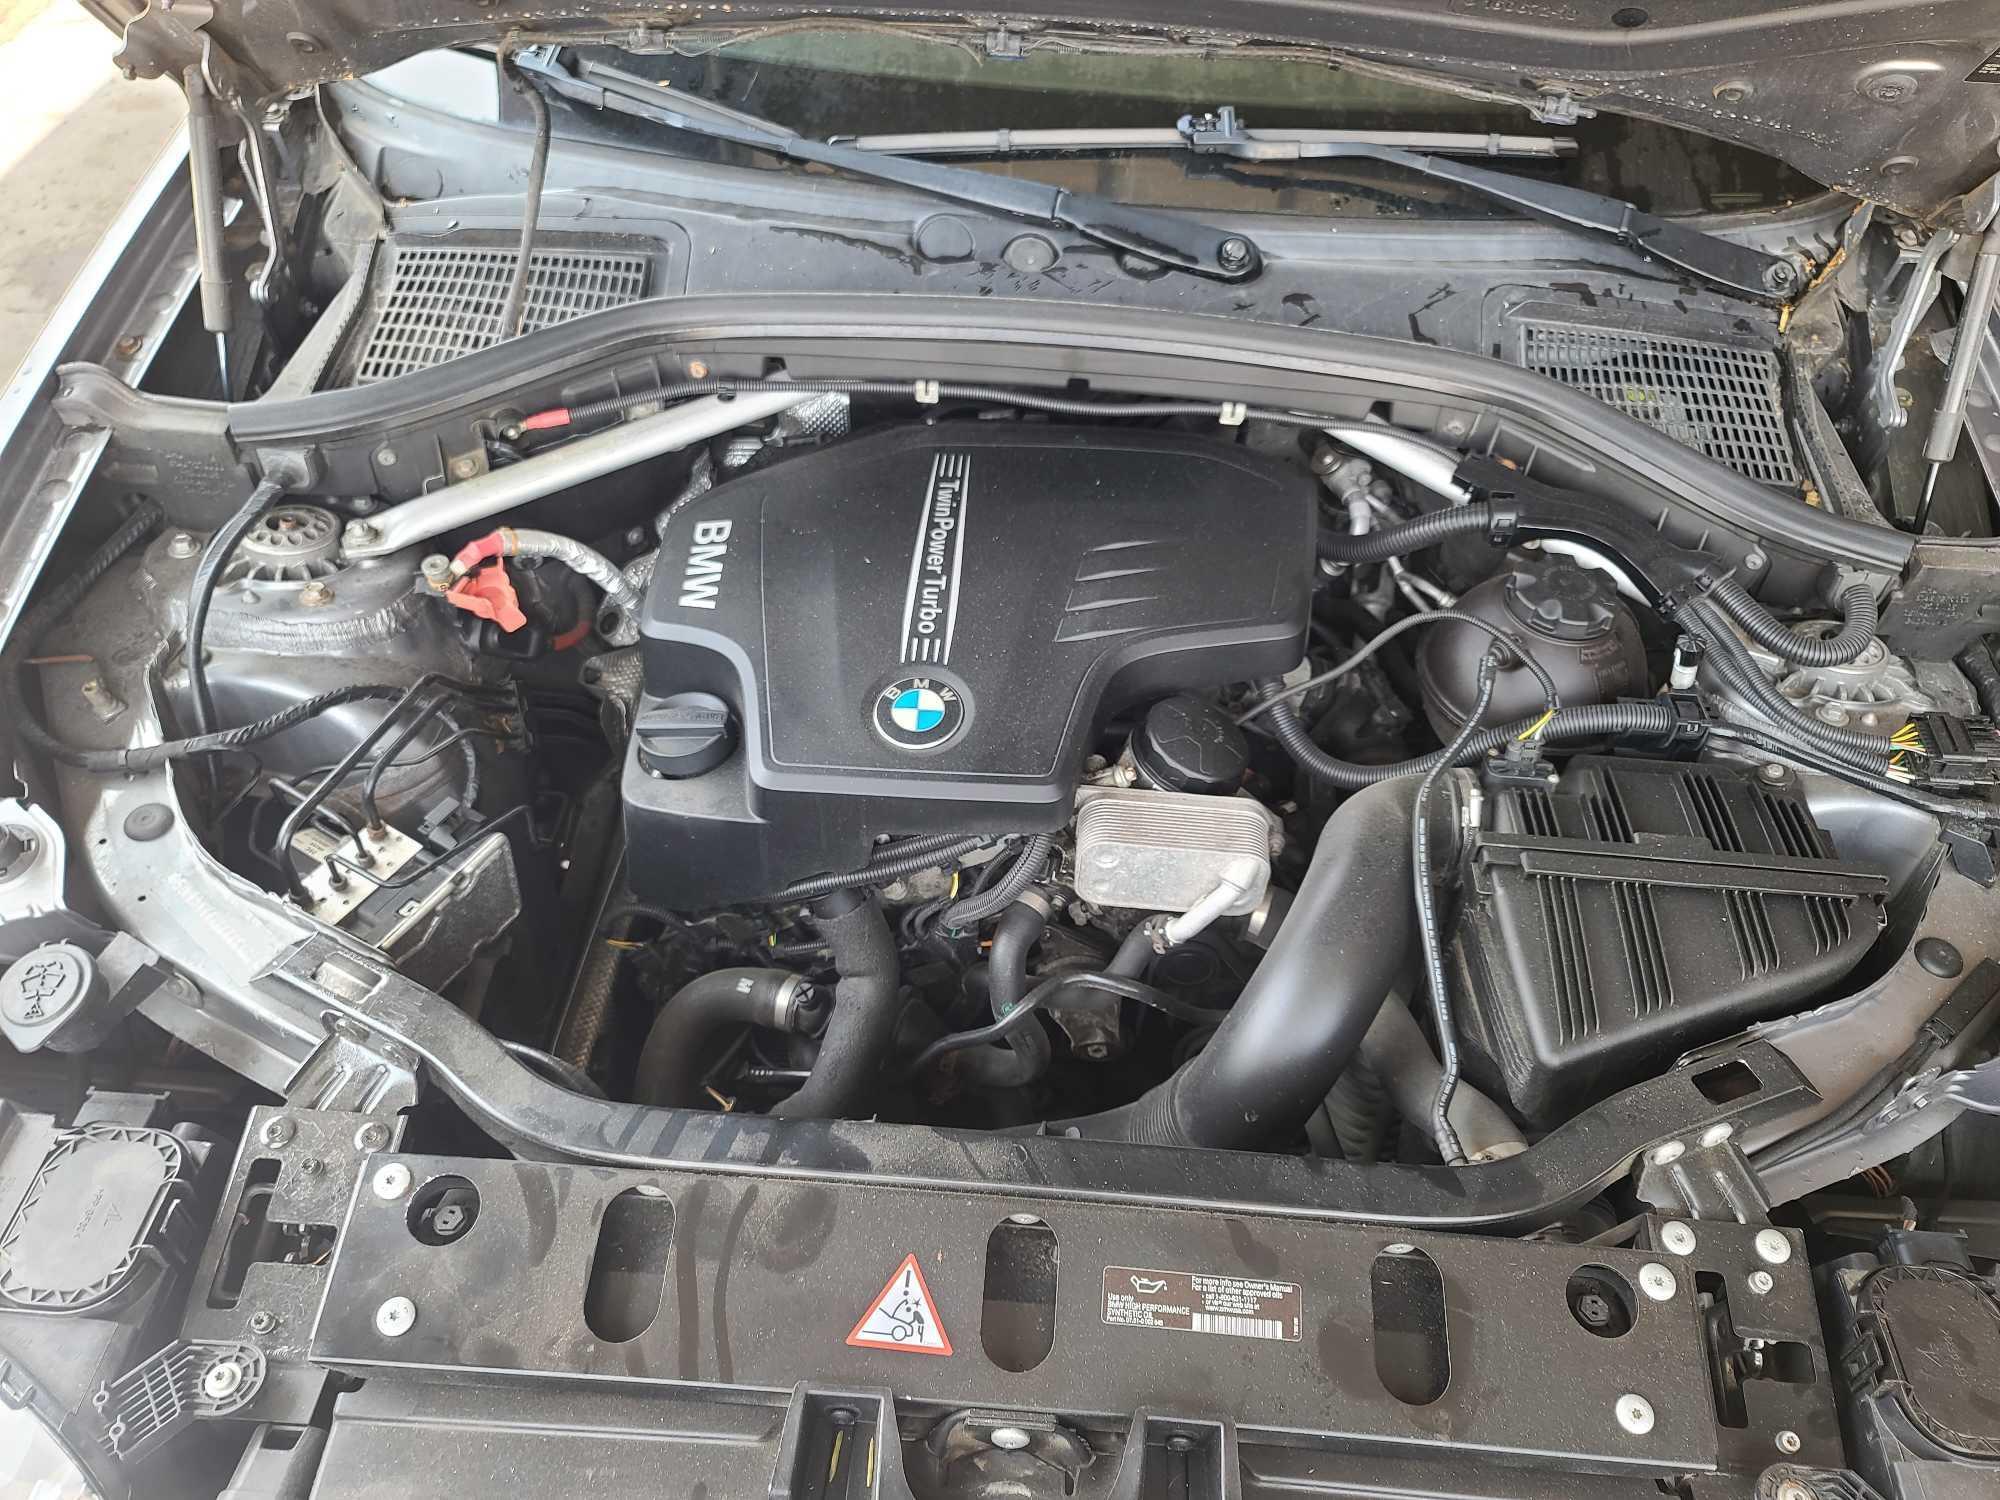 2014 BMW X3 Multipurpose Vehicle (MPV), VIN # 5UXWX9C5XE0D27404